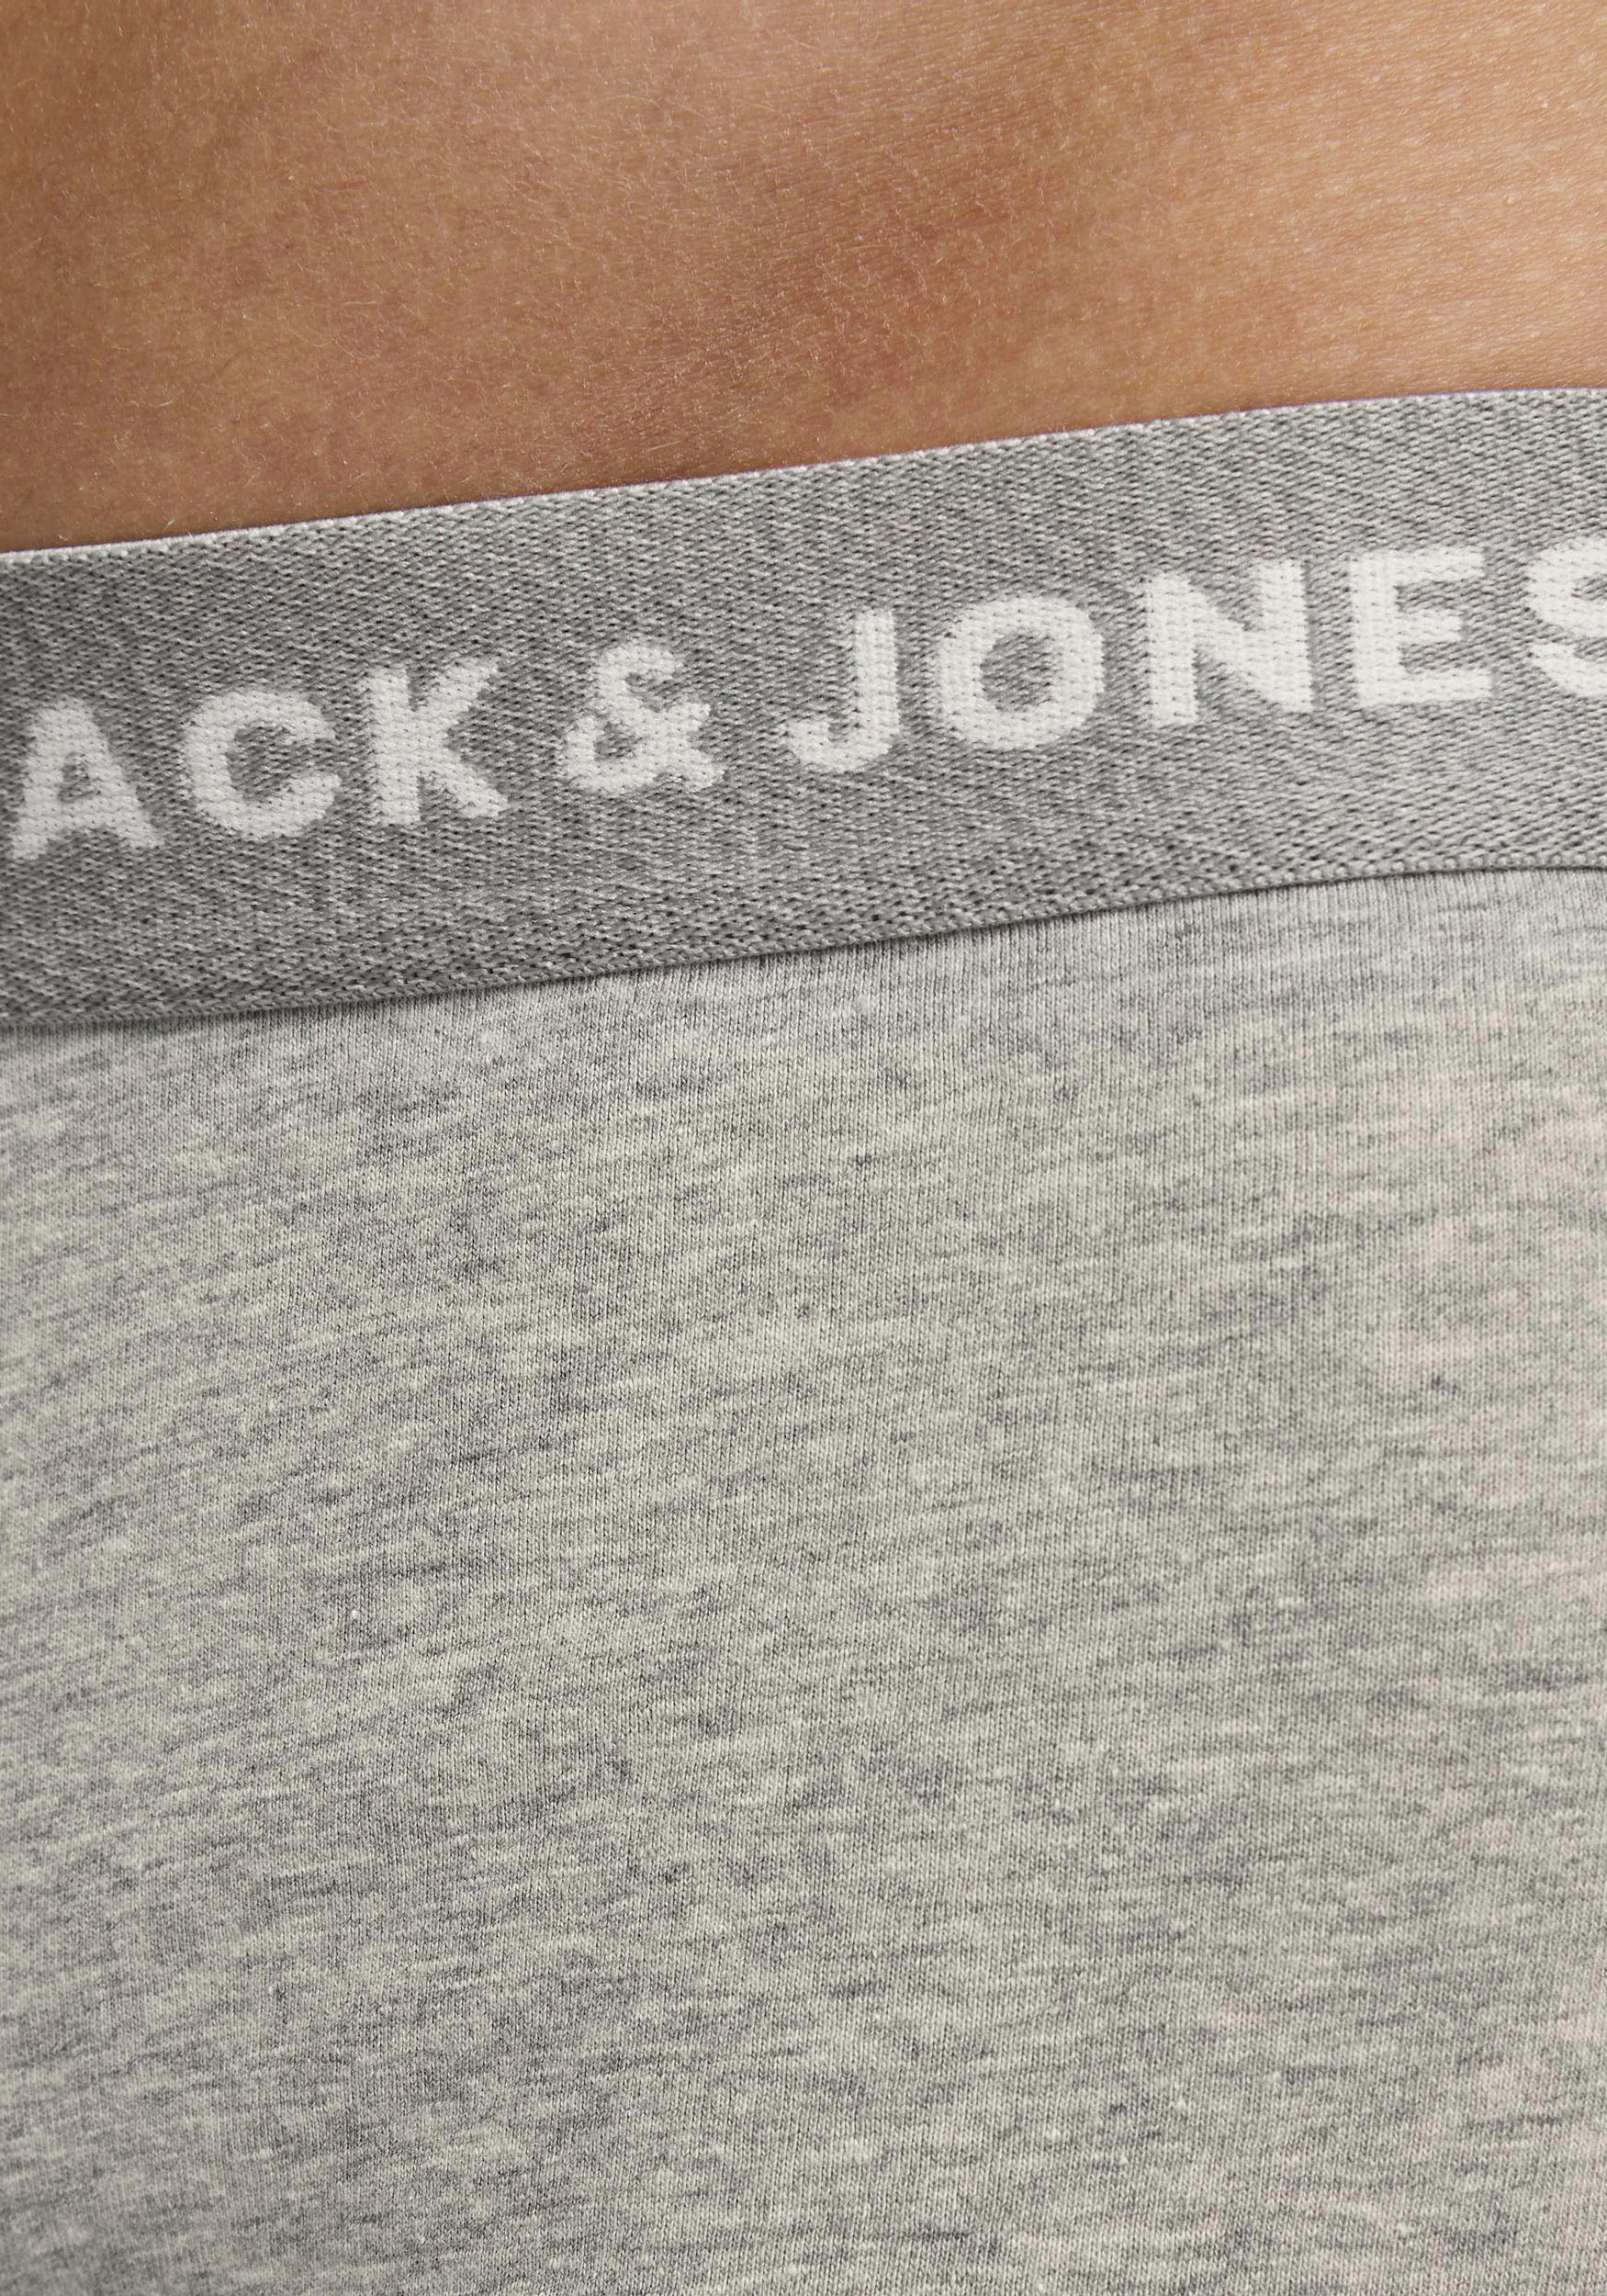 Jack & Jones Trunk »JACBASIC PLAIN TRUNKS 5 PACK«, (Packung, 5 St.)